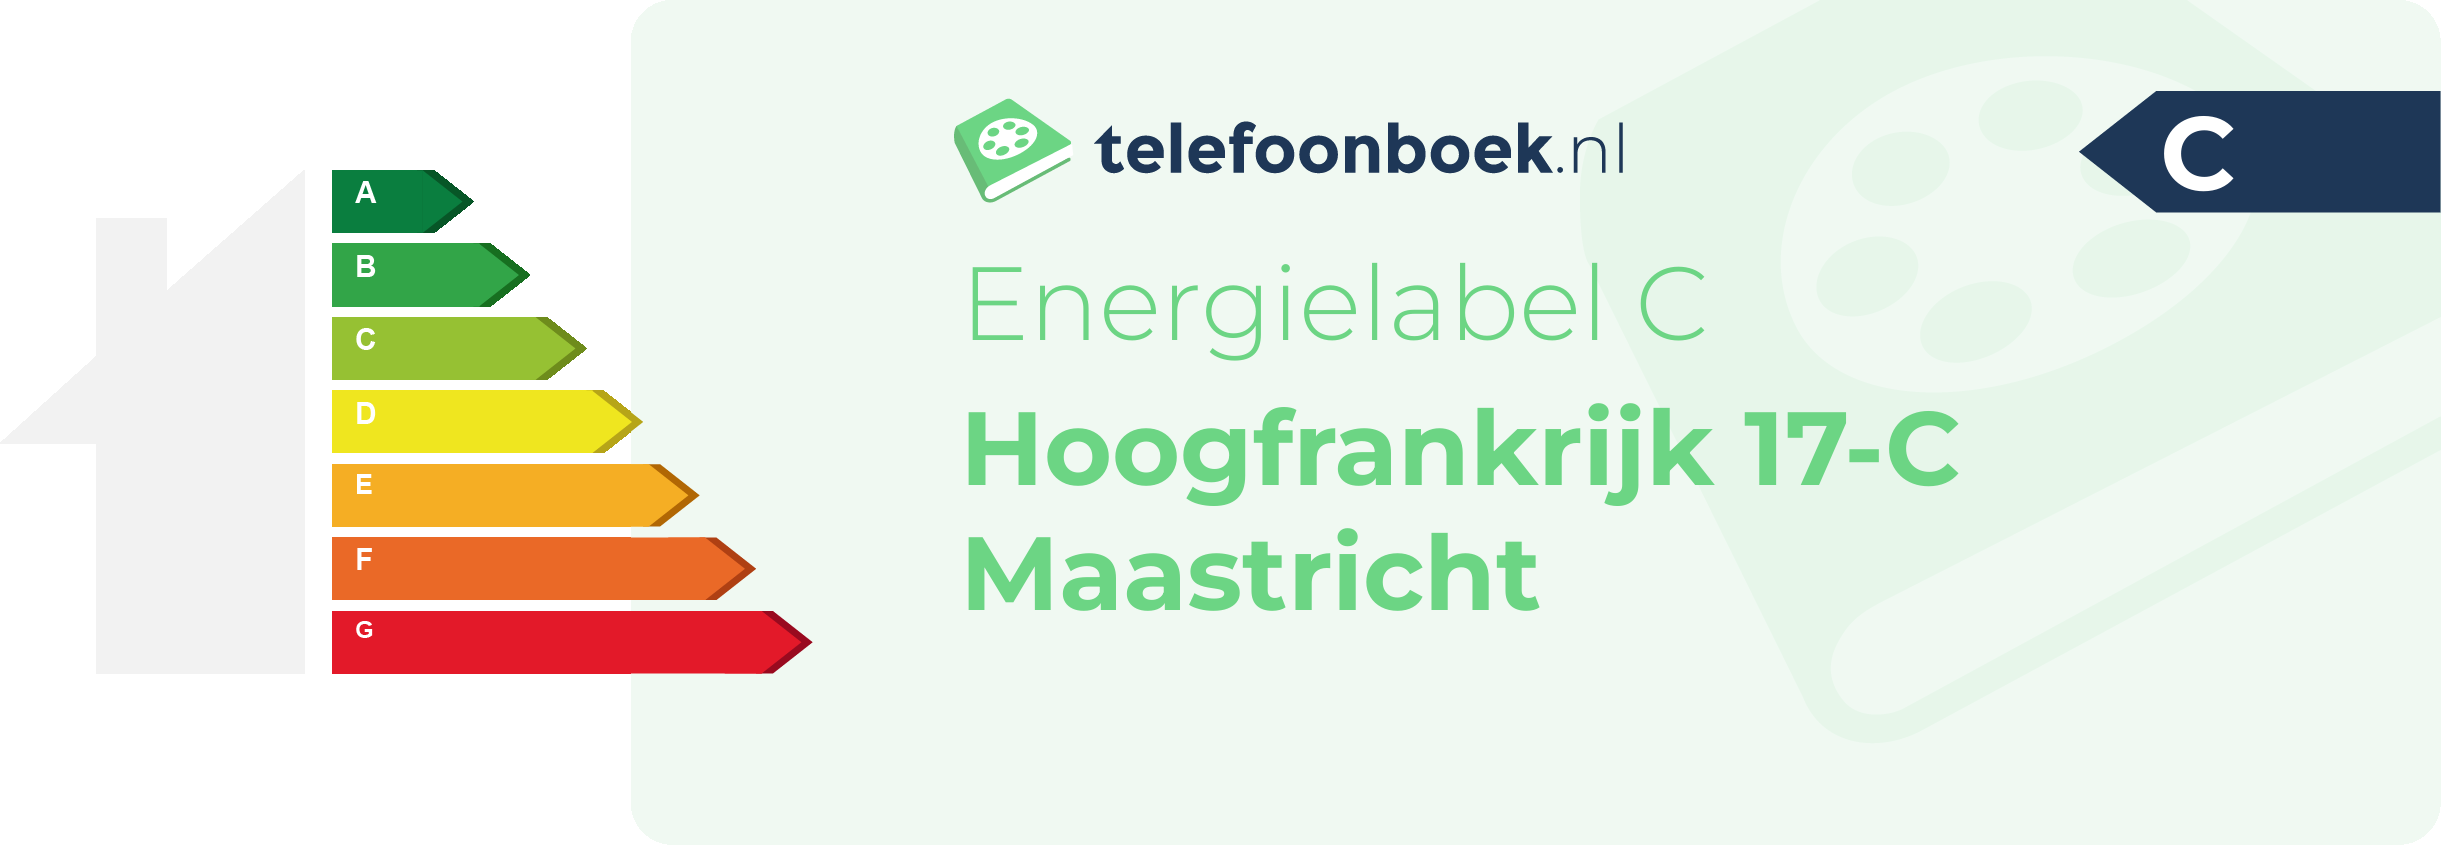 Energielabel Hoogfrankrijk 17-C Maastricht